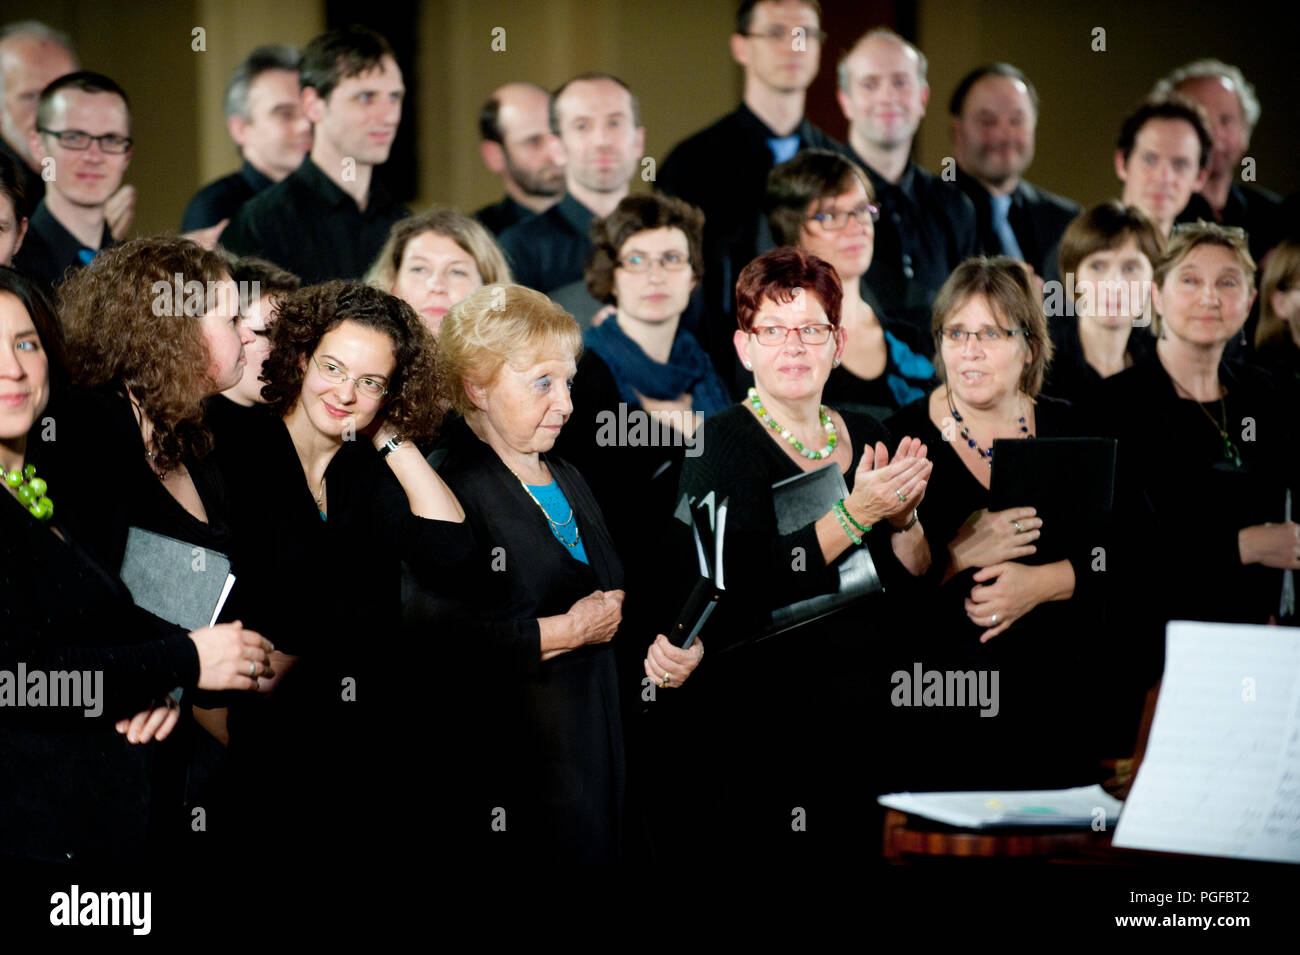 The Koordinaat chambre choir and vocAmuze choir performing the Noorderlicht concert in Heverlee (Belgium, 21/11/2015) Stock Photo